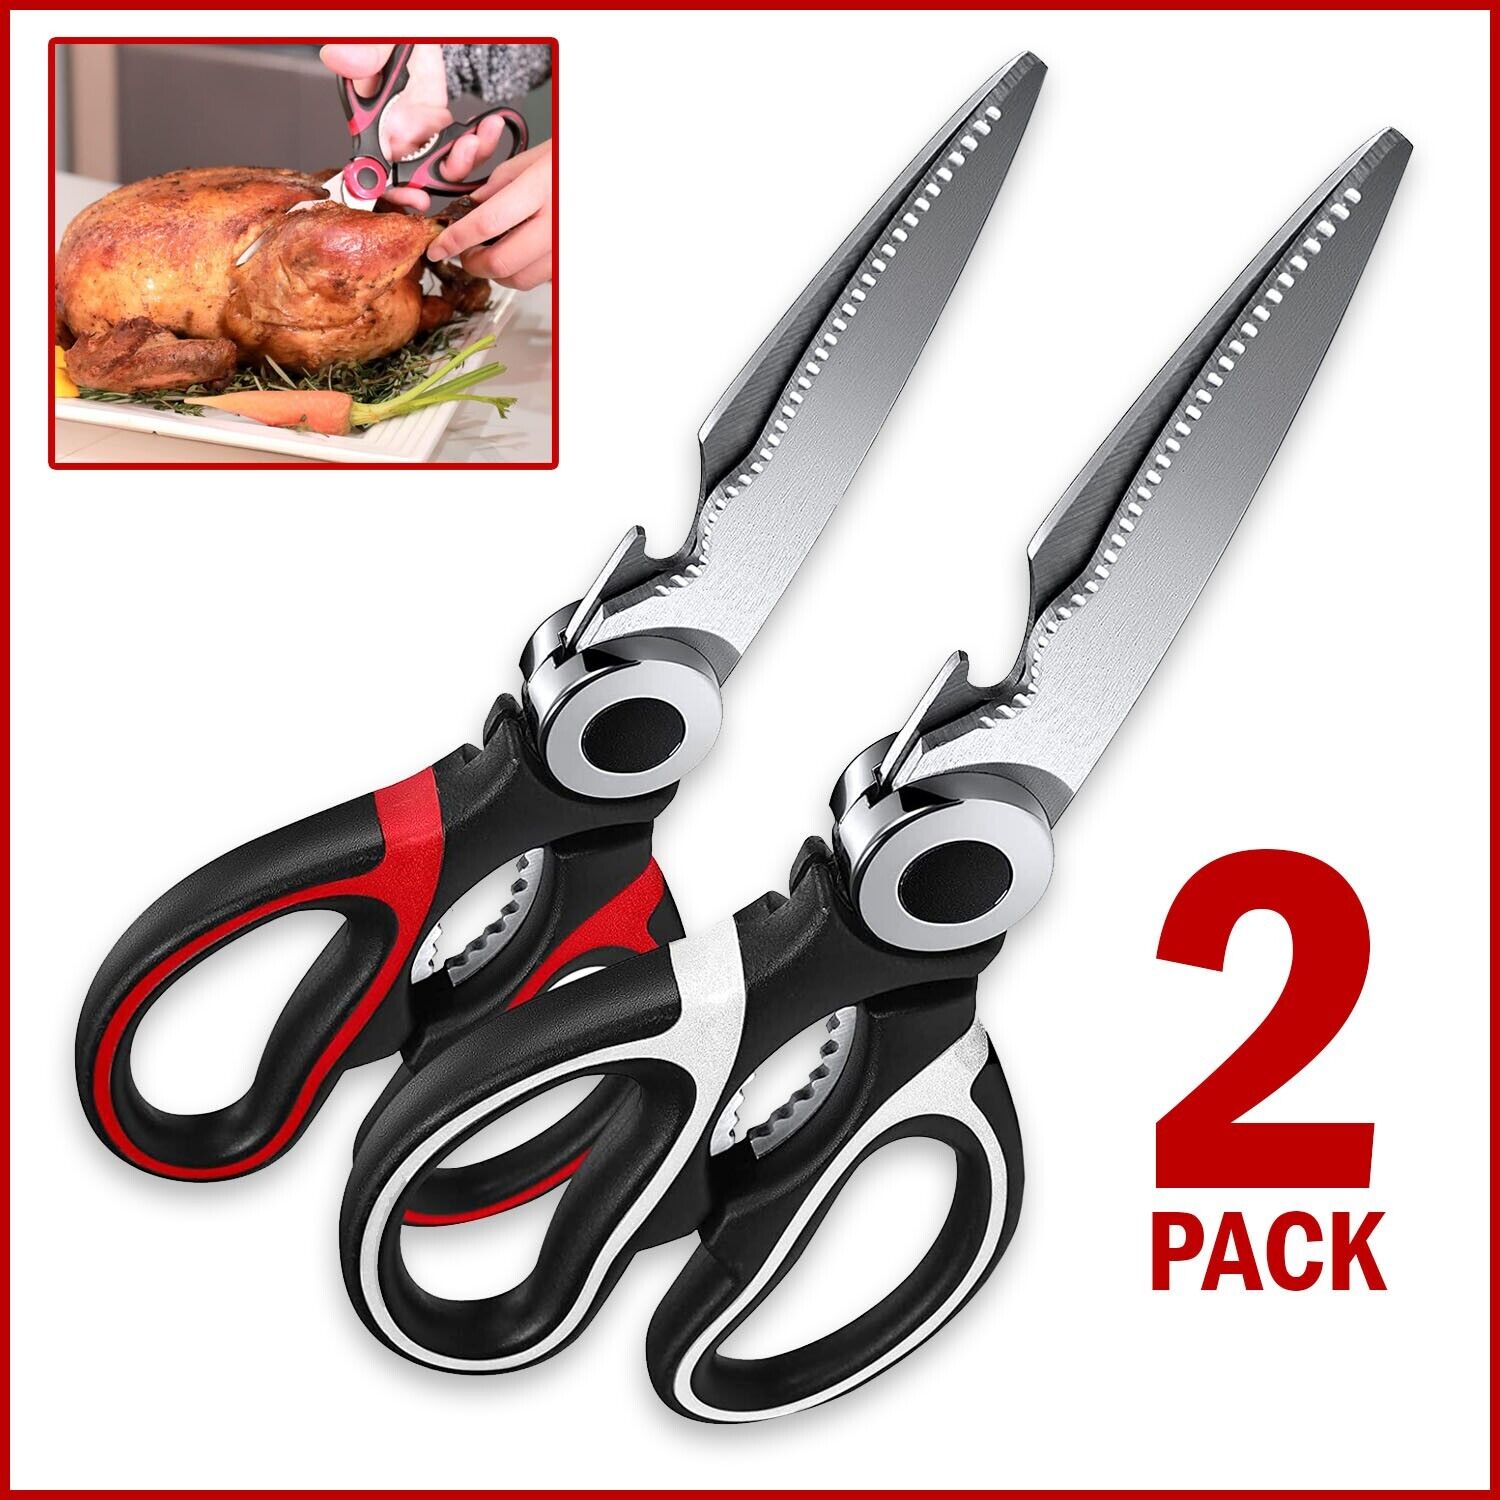 2 Pack Kitchen Shears, Stainless Steel Heavy Duty Meat Scissors